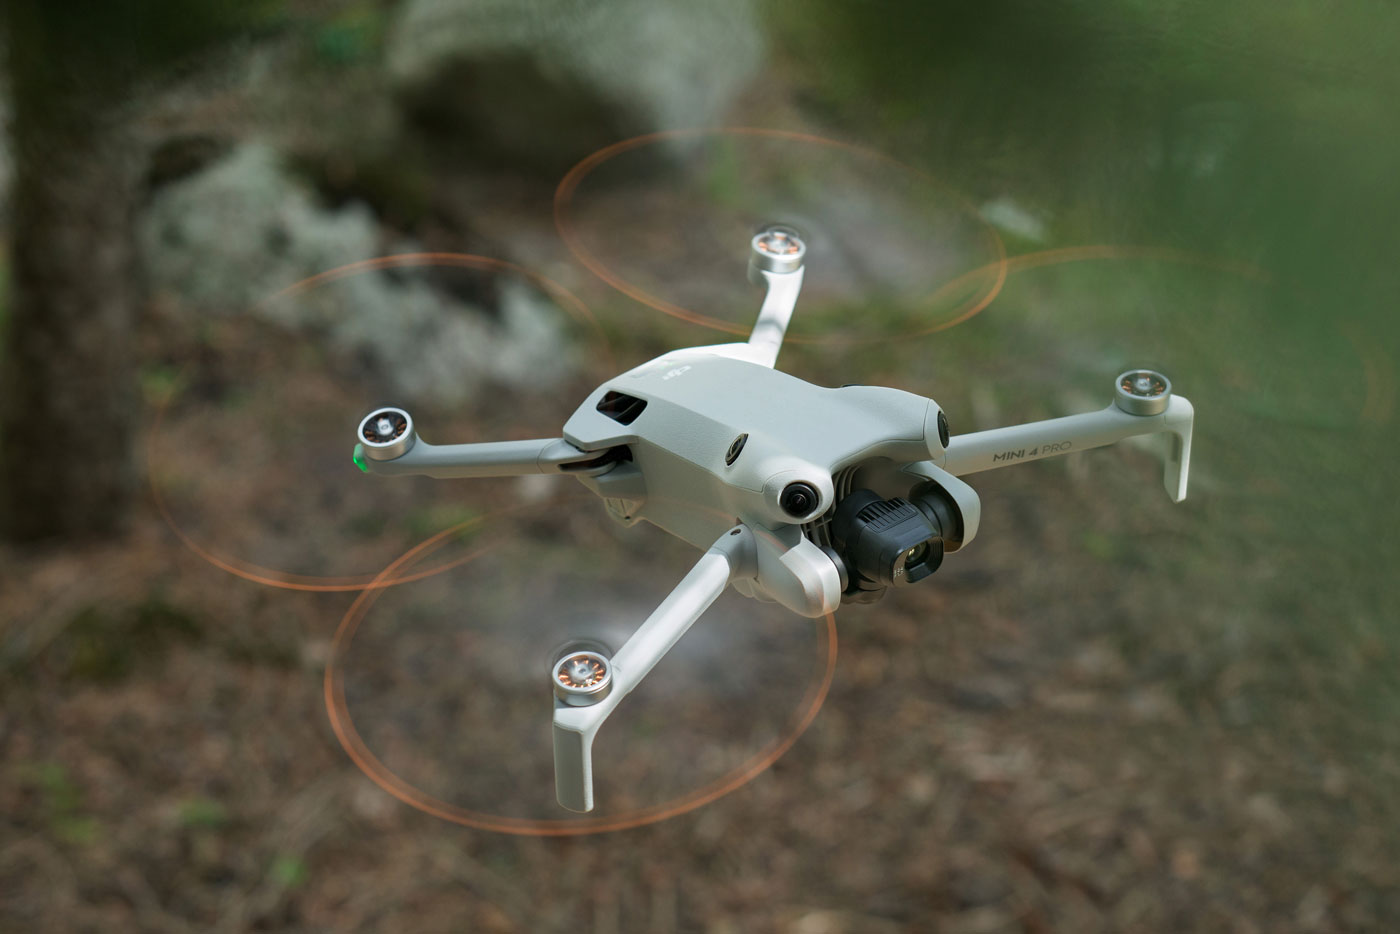 DJI Mini 4 Pro : le nouveau drone compact et performant pour les